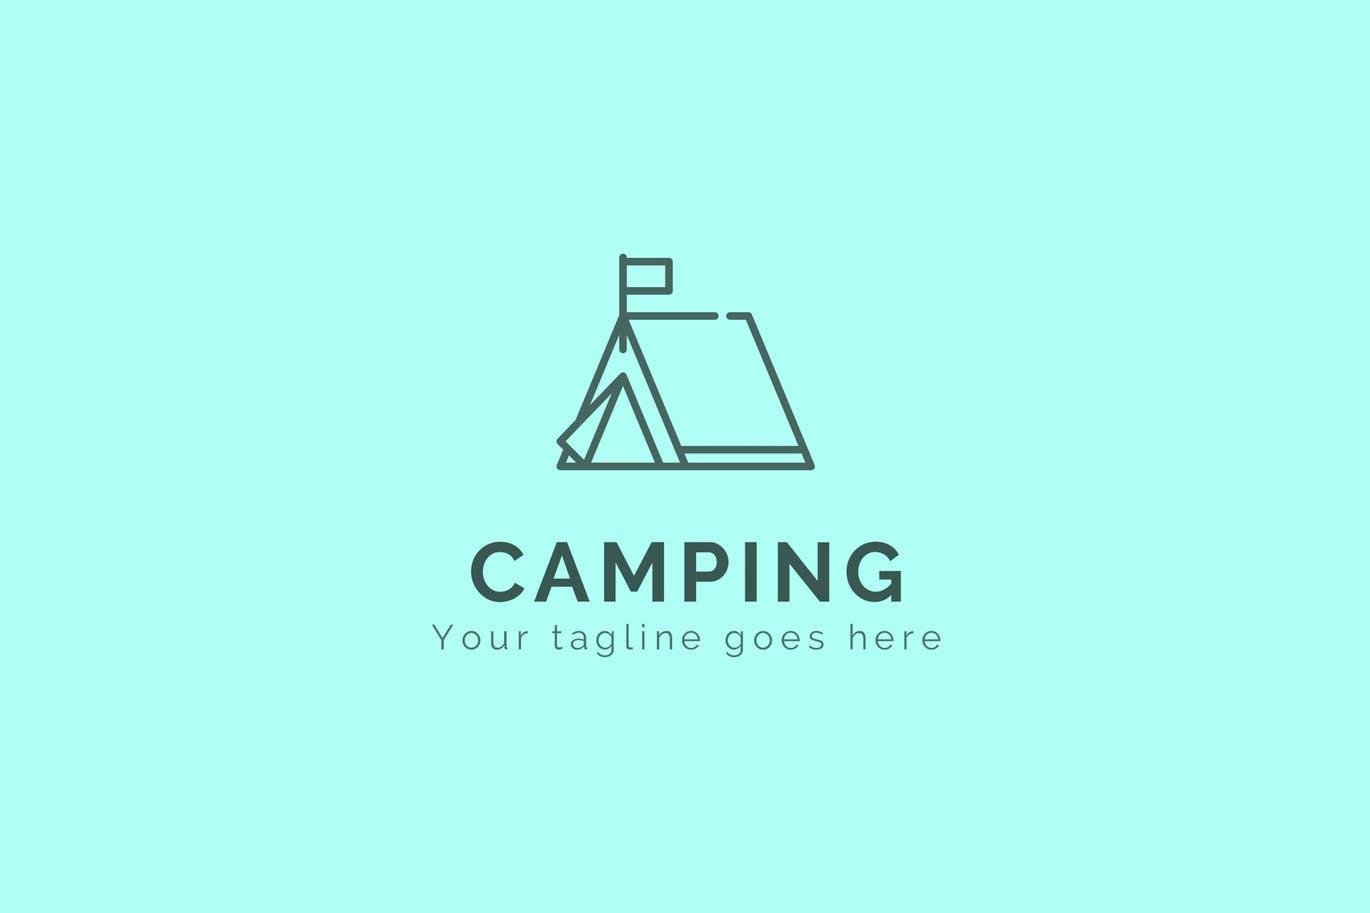 登山户外品牌露营图形Logo设计素材库精选模板 Camping – Premium Logo Template插图